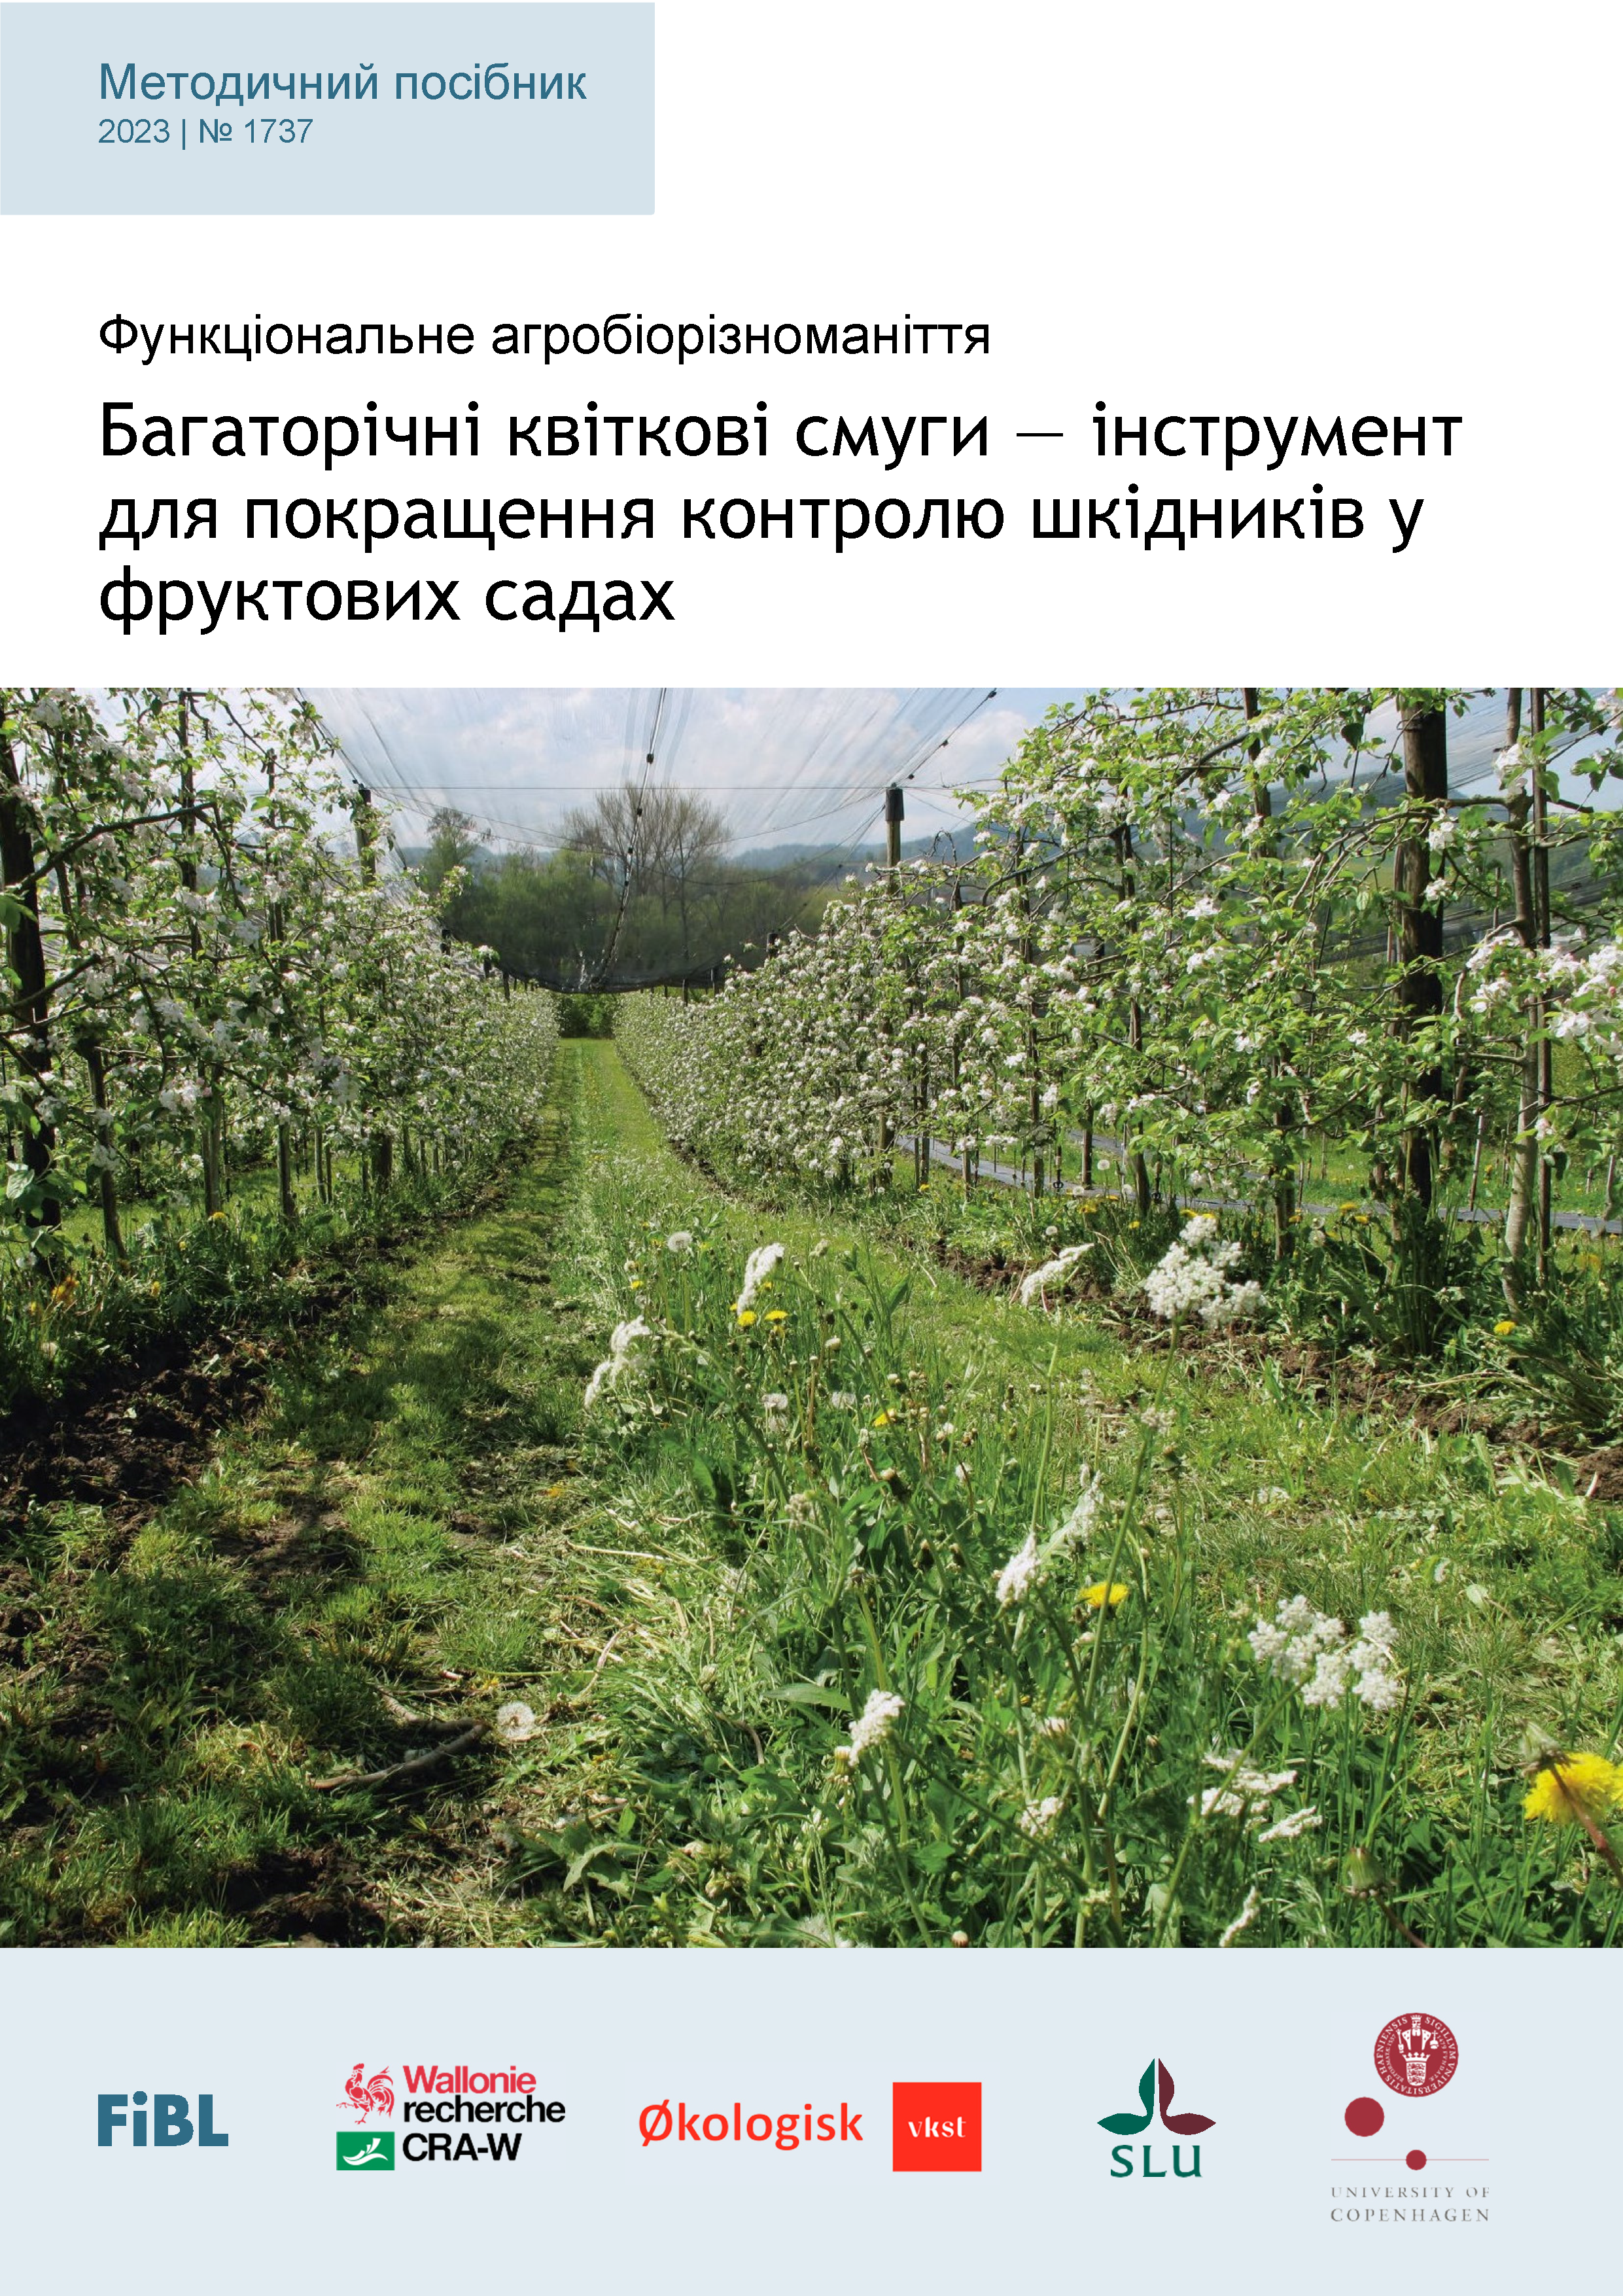 Cover: Багаторічні квіткові смуги — інструмент для покращення контролю шкідників у фруктових садах